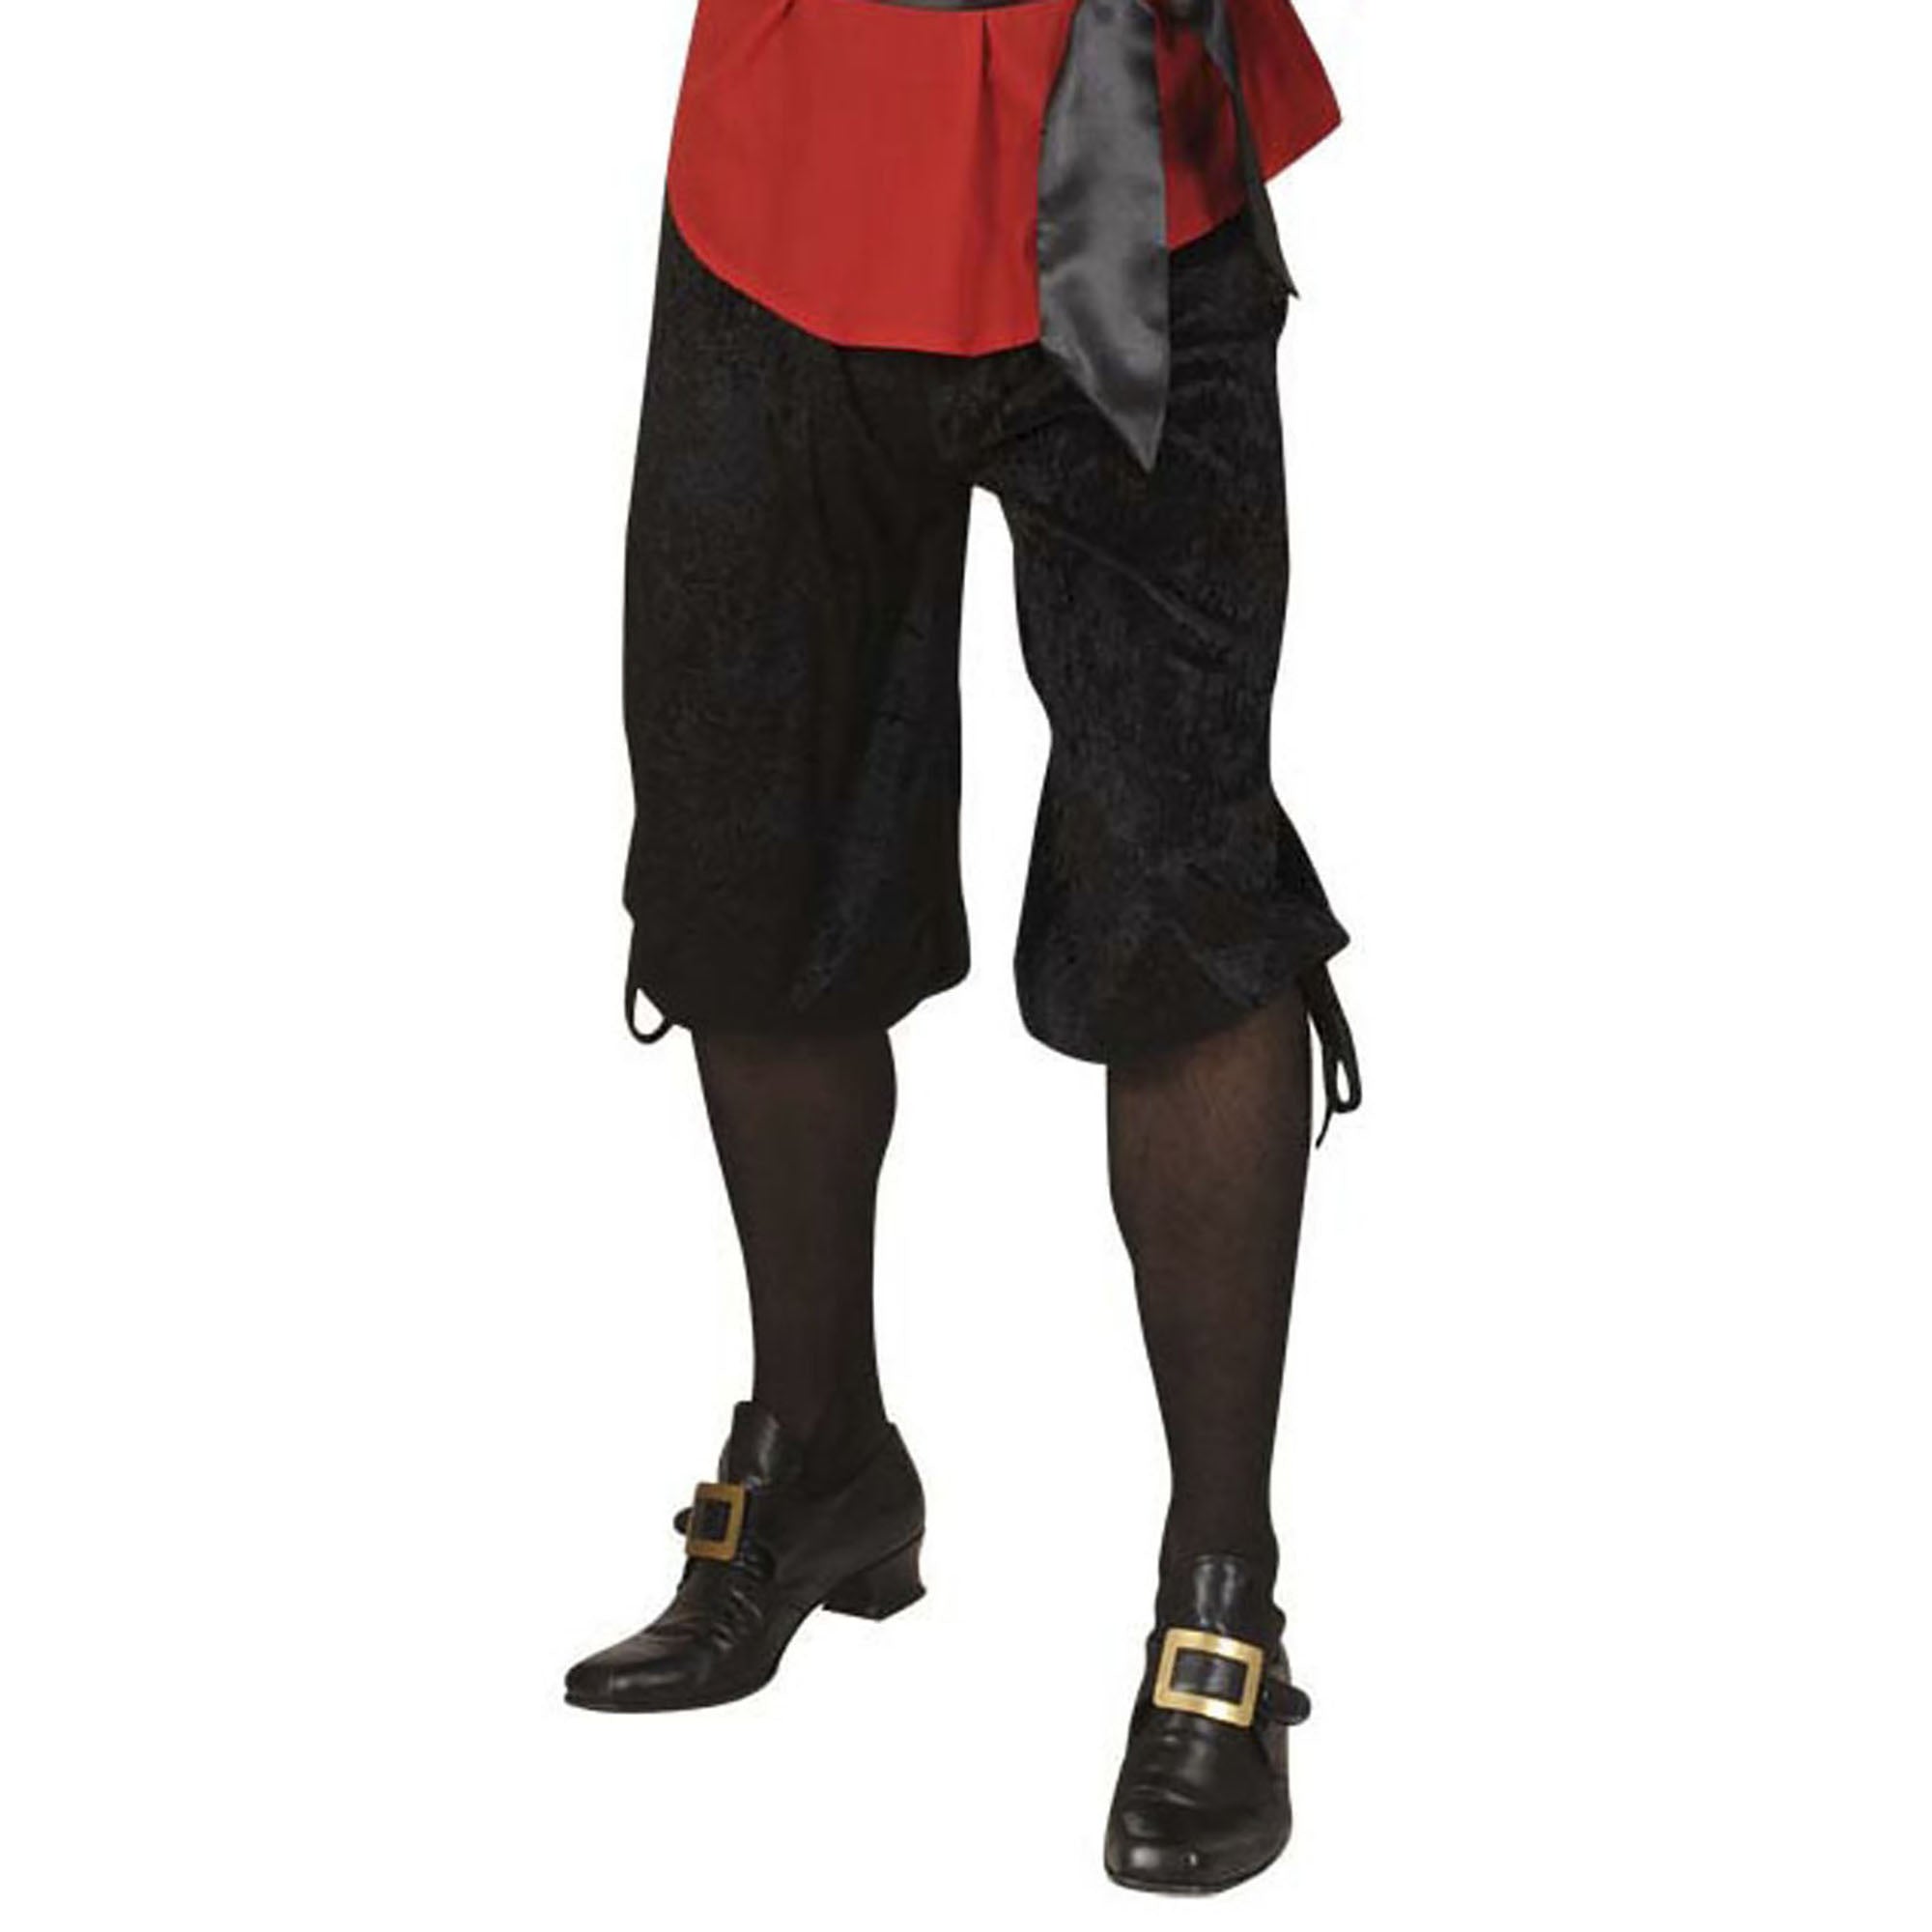 Zwarte piraten broek voor mannen - Volwassenen kostuums